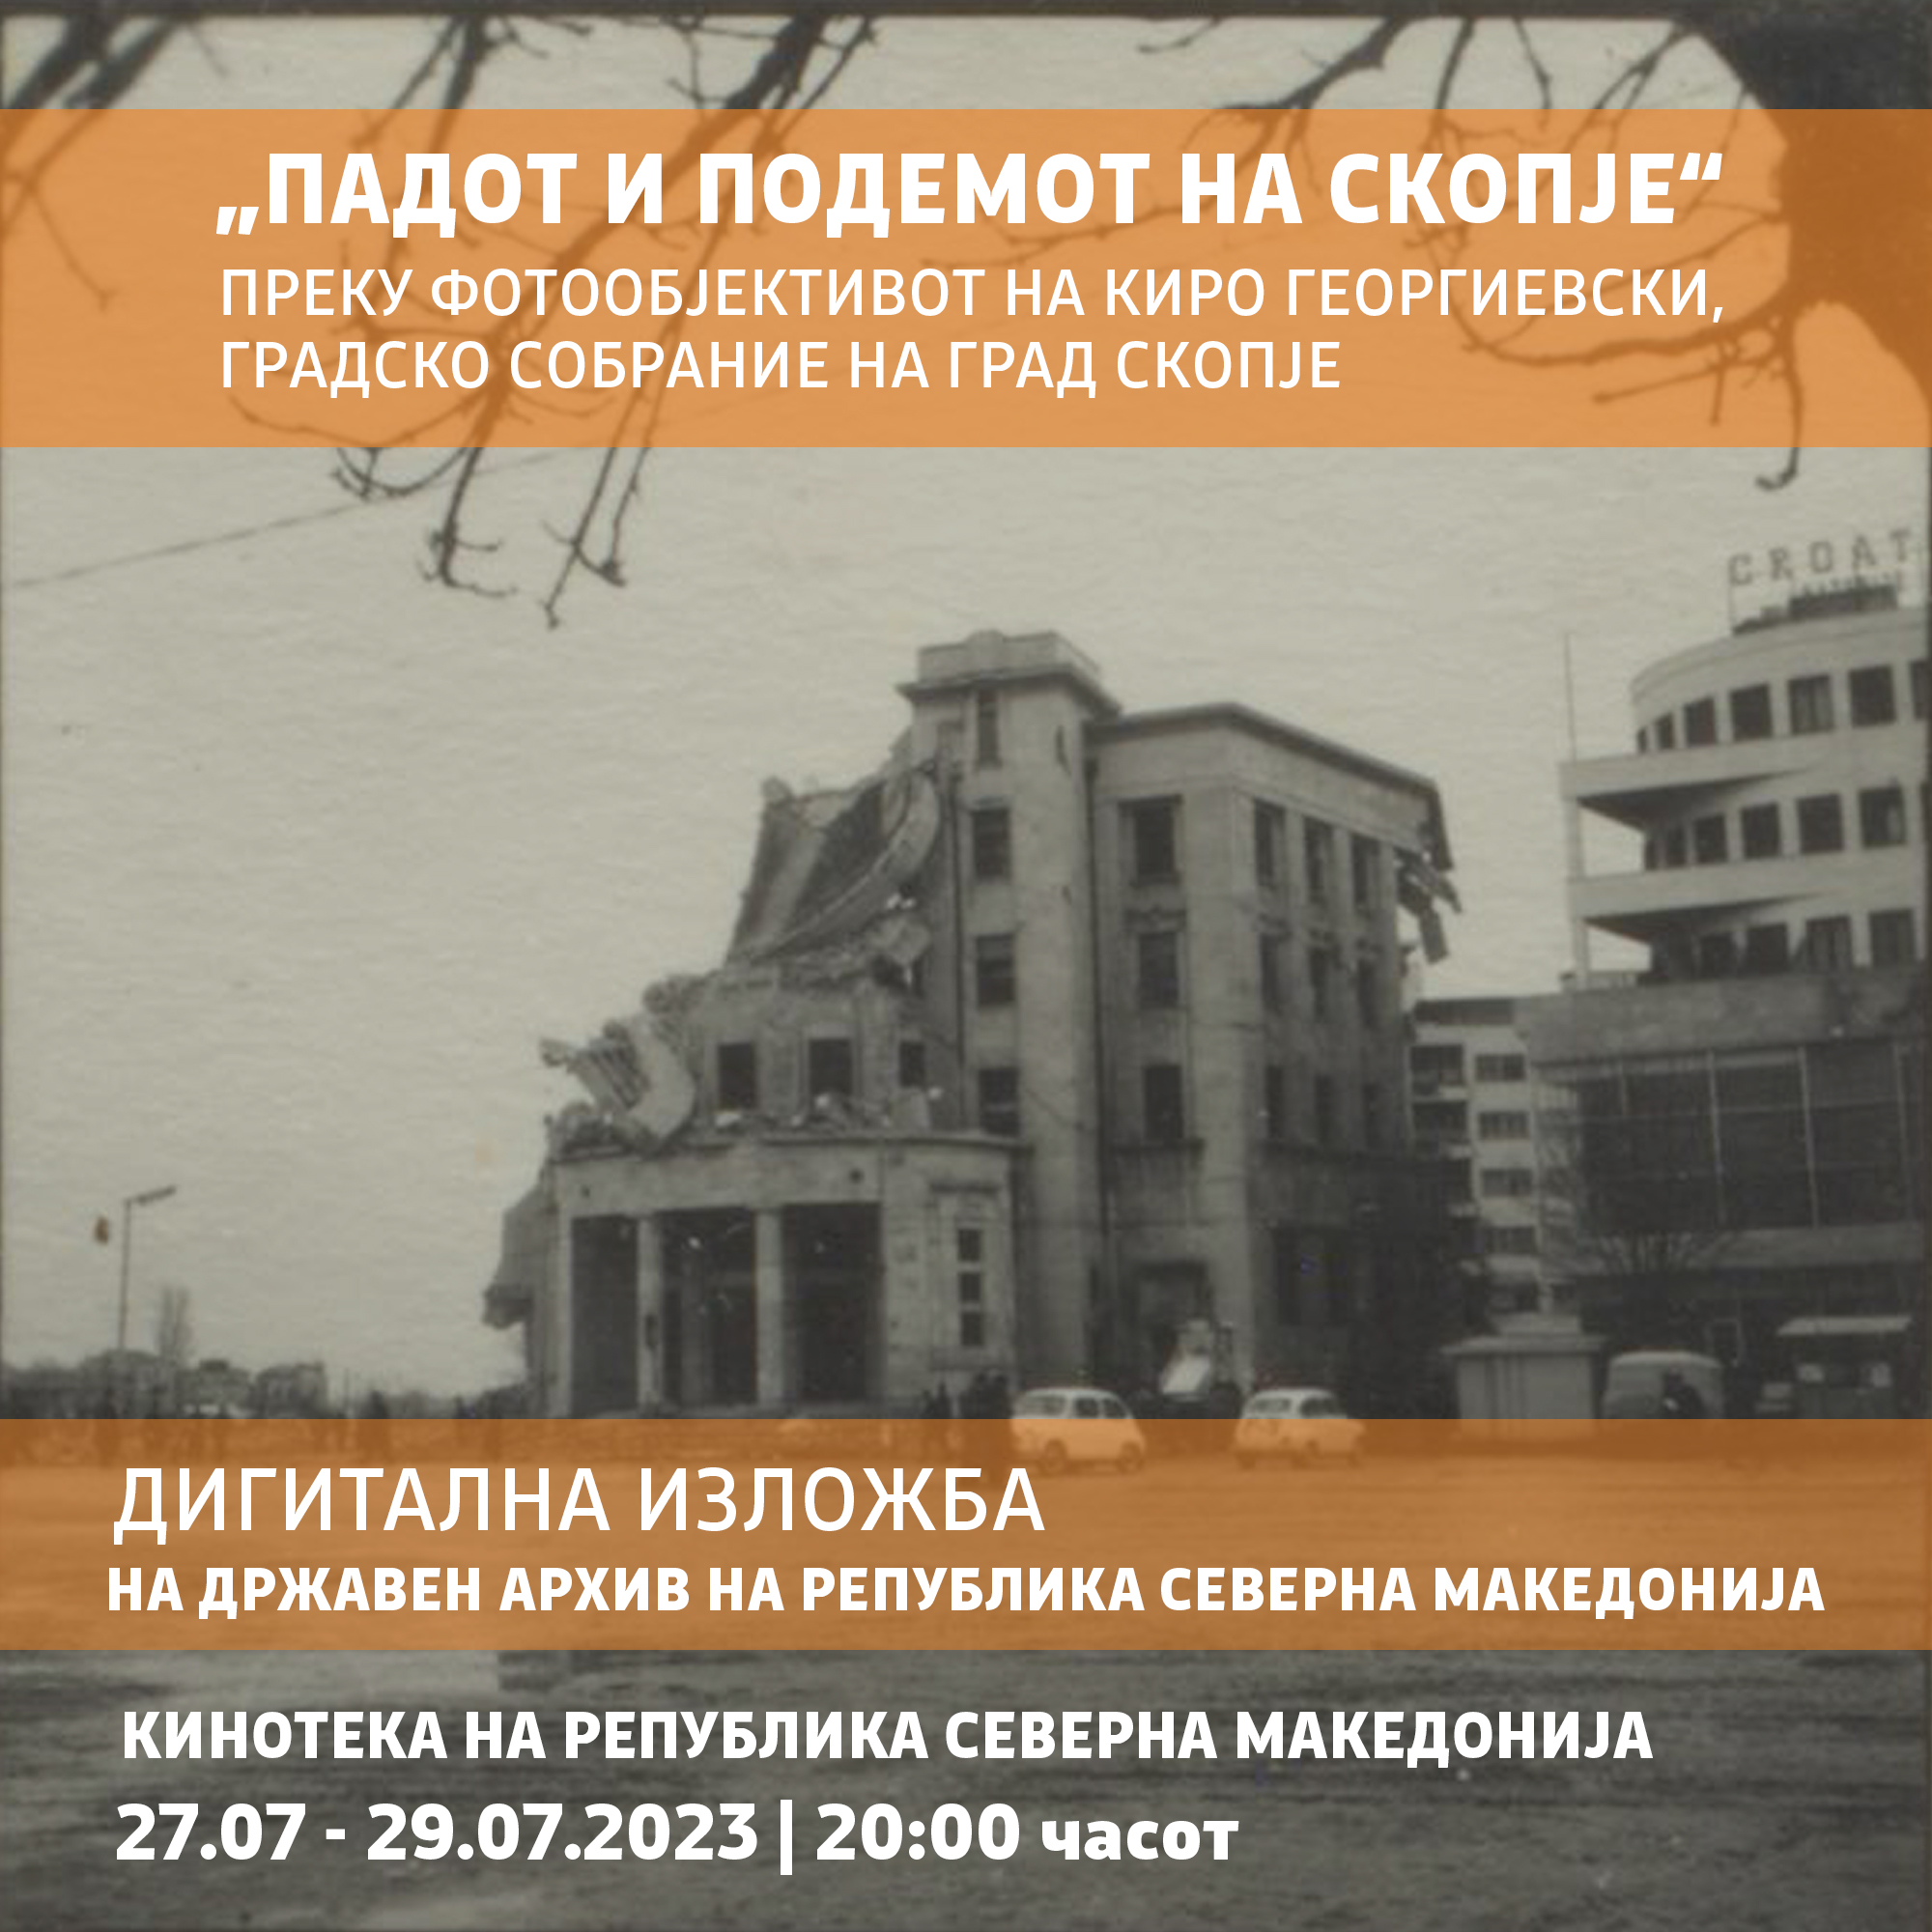 60-годишнина од скопскиот земјотрес во 1963 година: Дигитализирана изложба „Подемот и падот на Скопје“ од вечерва се прикажува во Кинотека